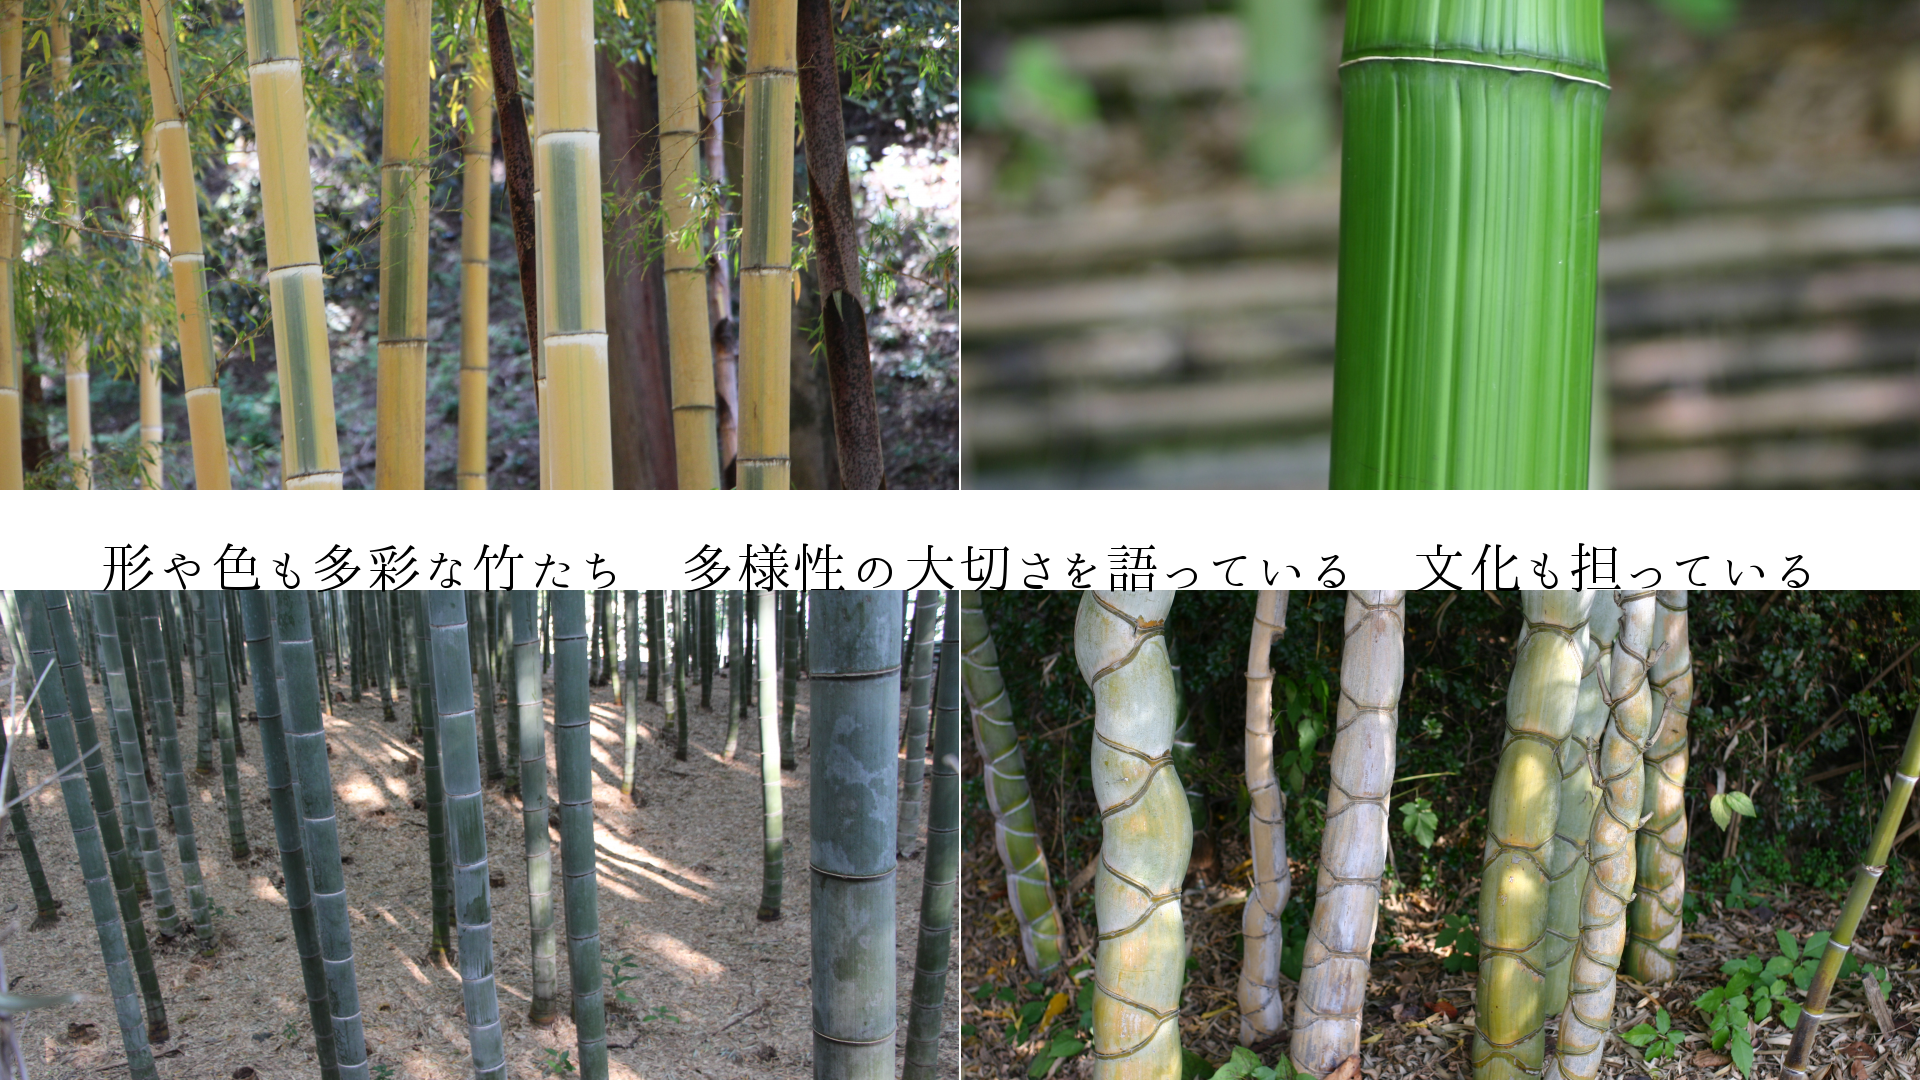 形や色も多彩な竹たち　多様性の大切さを語っている　文化も担っている
　